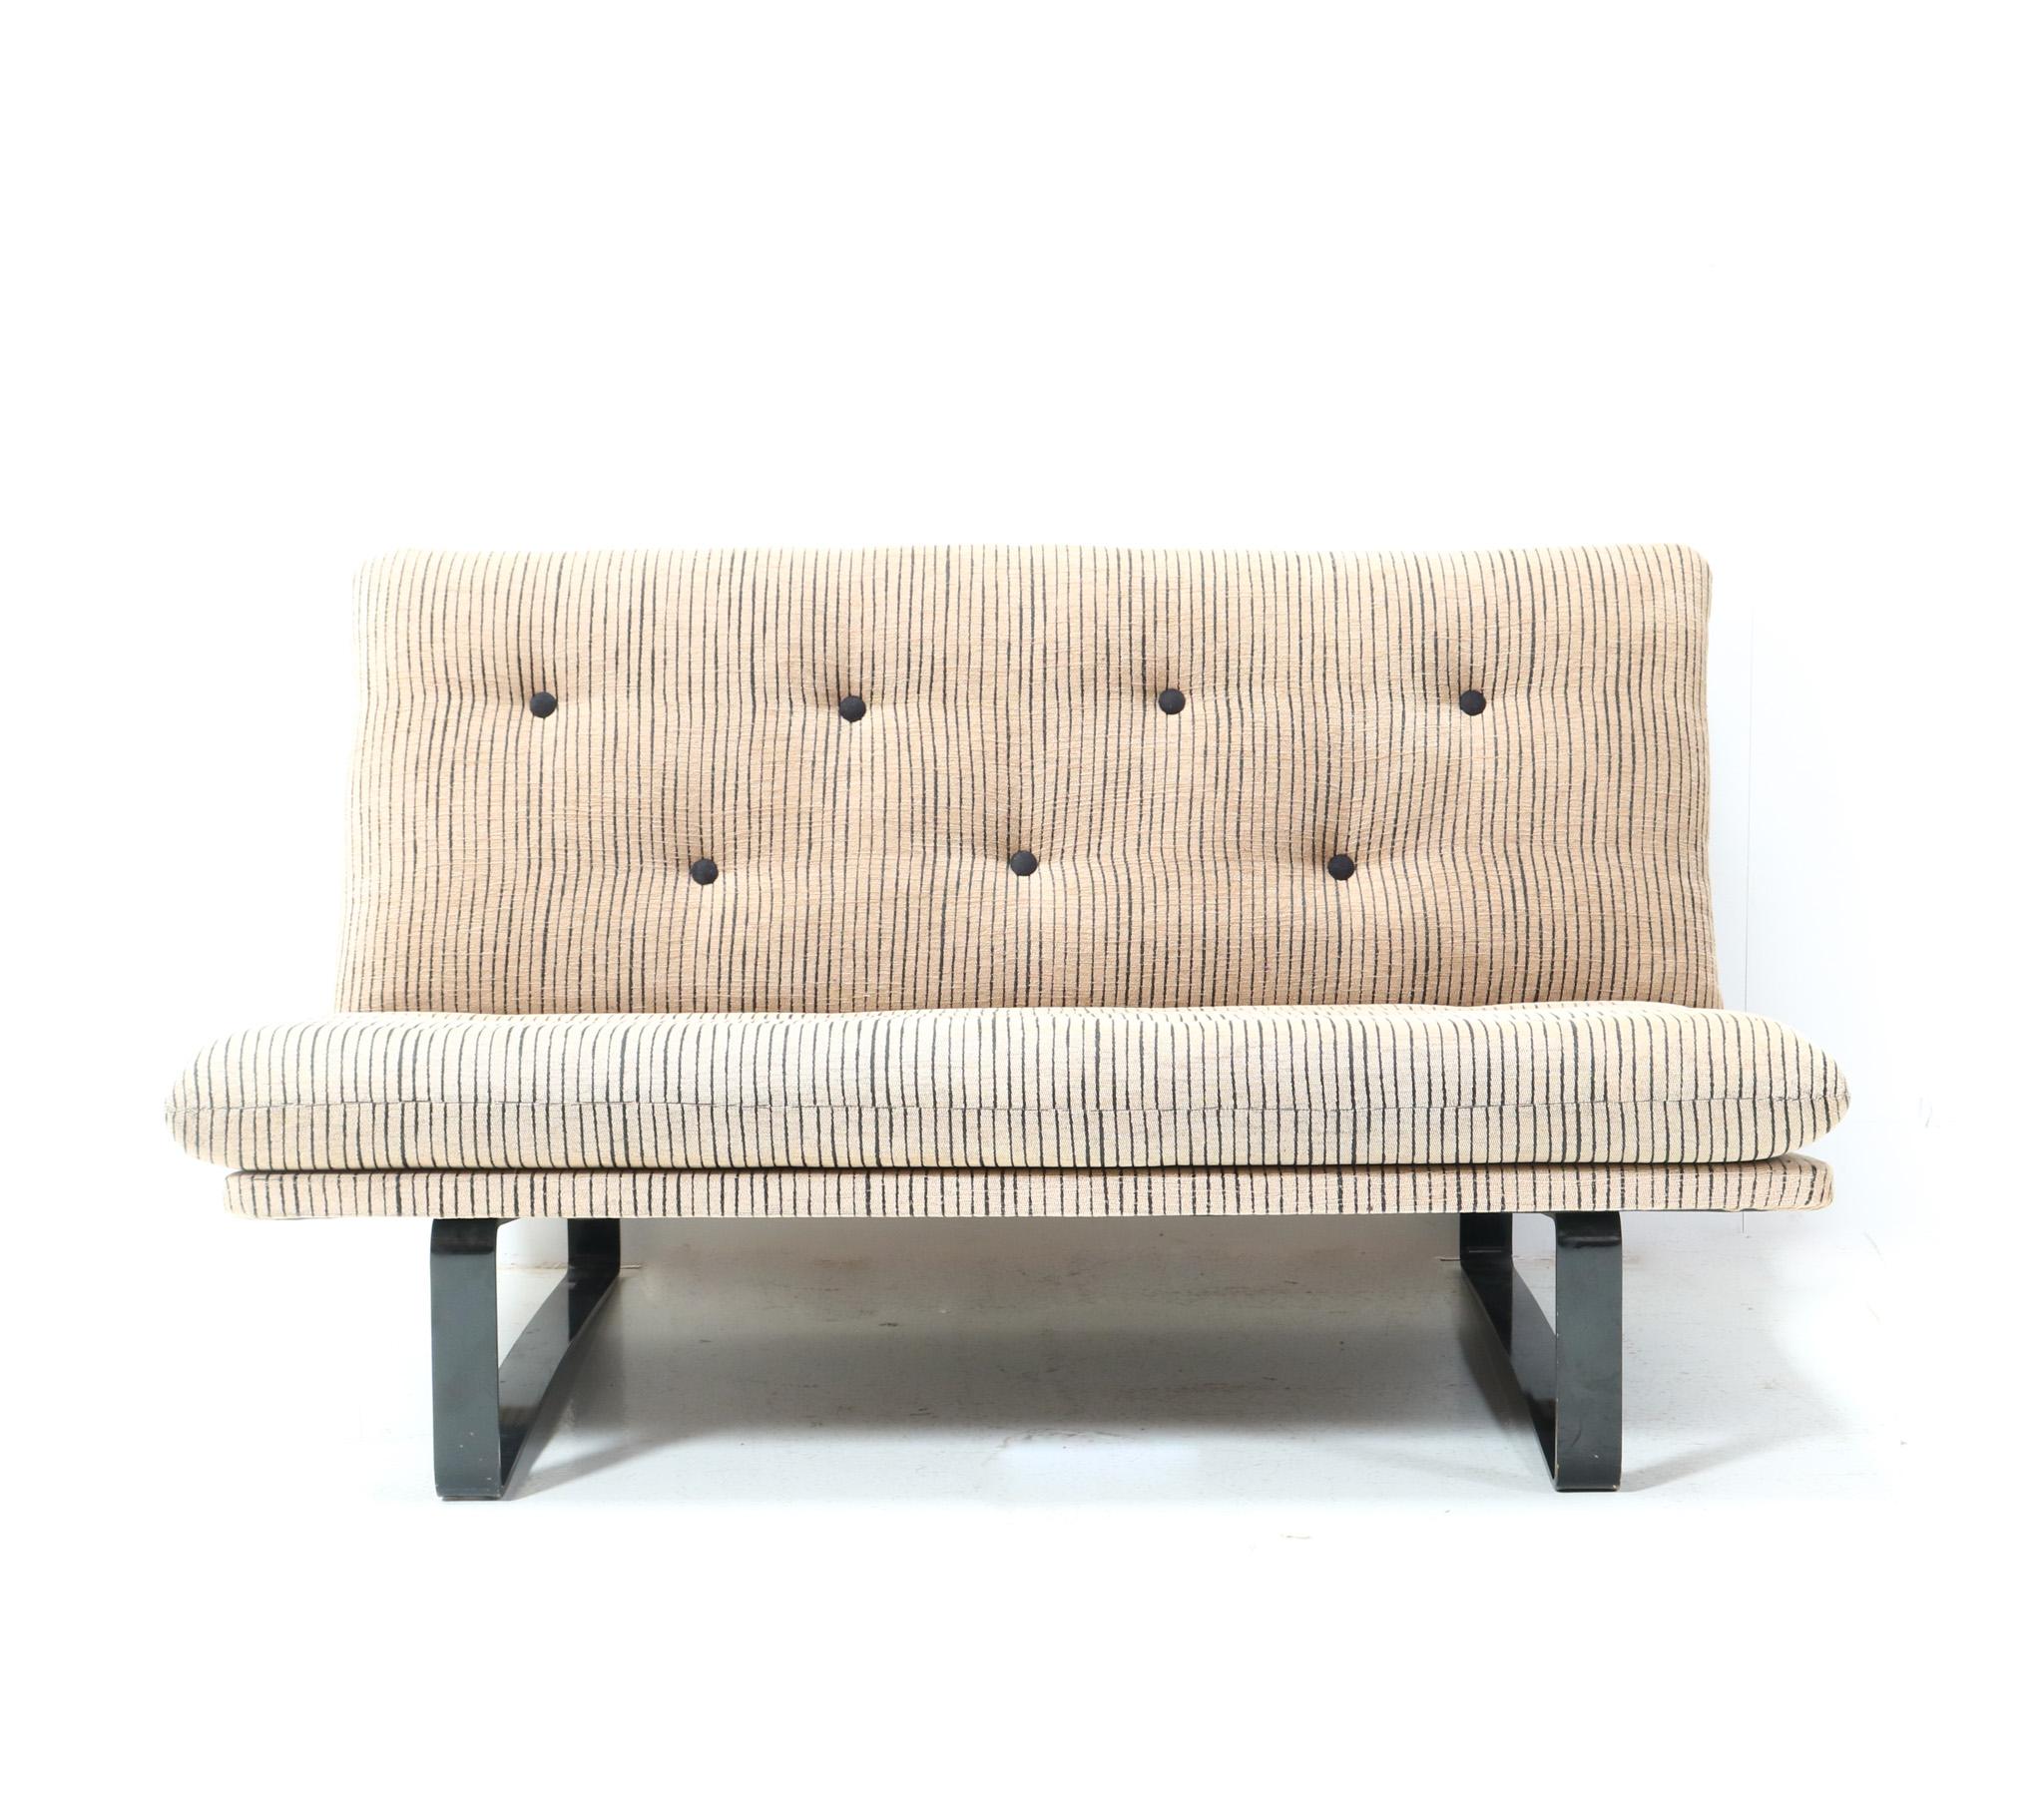 Atemberaubendes Mid-Century Modern C683 Zweisitzersofa oder -sofa.
Entwurf von Kho Liang Le für Artifort.
Auffälliges niederländisches Design aus den 1960er Jahren.
Originaler schwarz lackierter Metallrahmen mit originaler Tufting-Polsterung.
Dieses